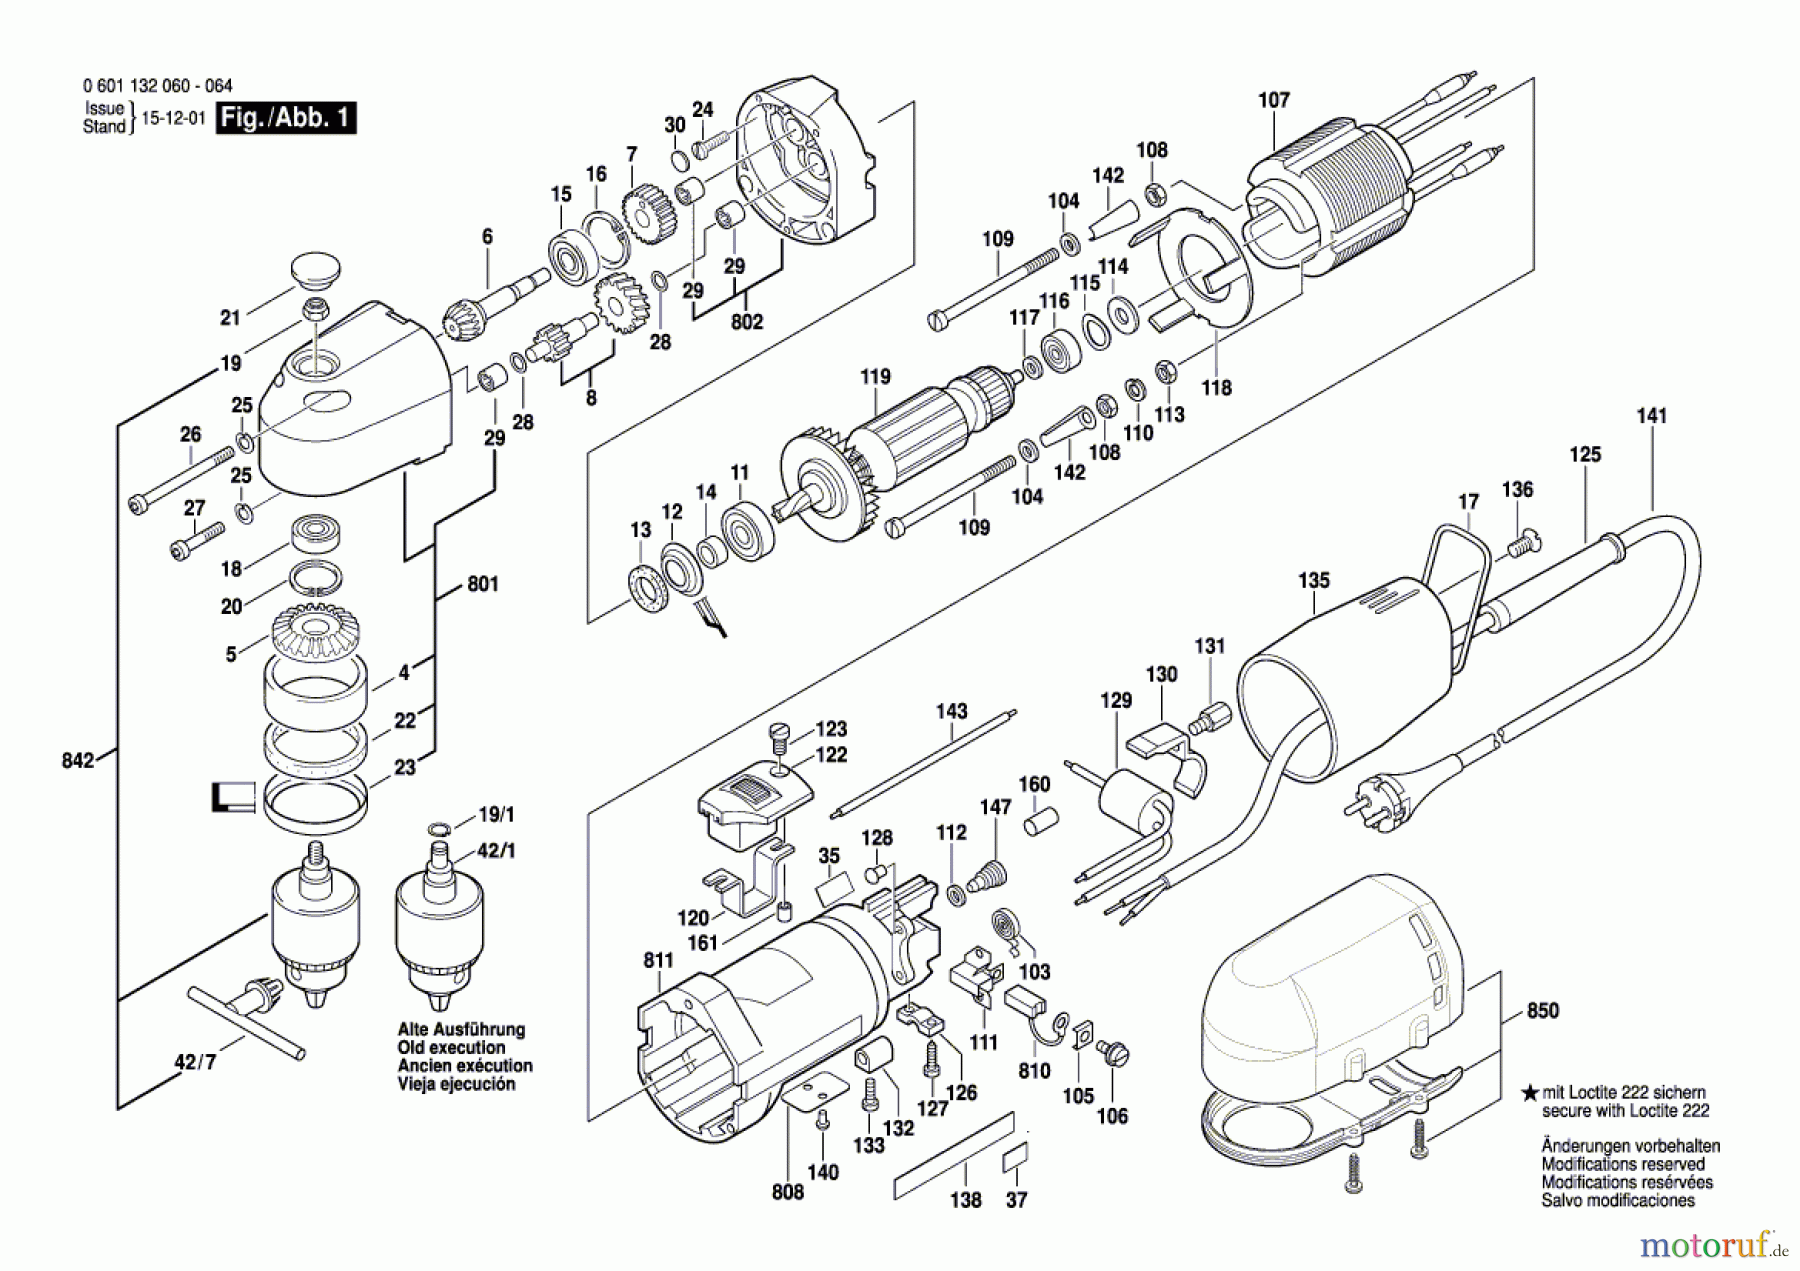  Bosch Werkzeug Winkelbohrmaschine WB 10 Seite 1